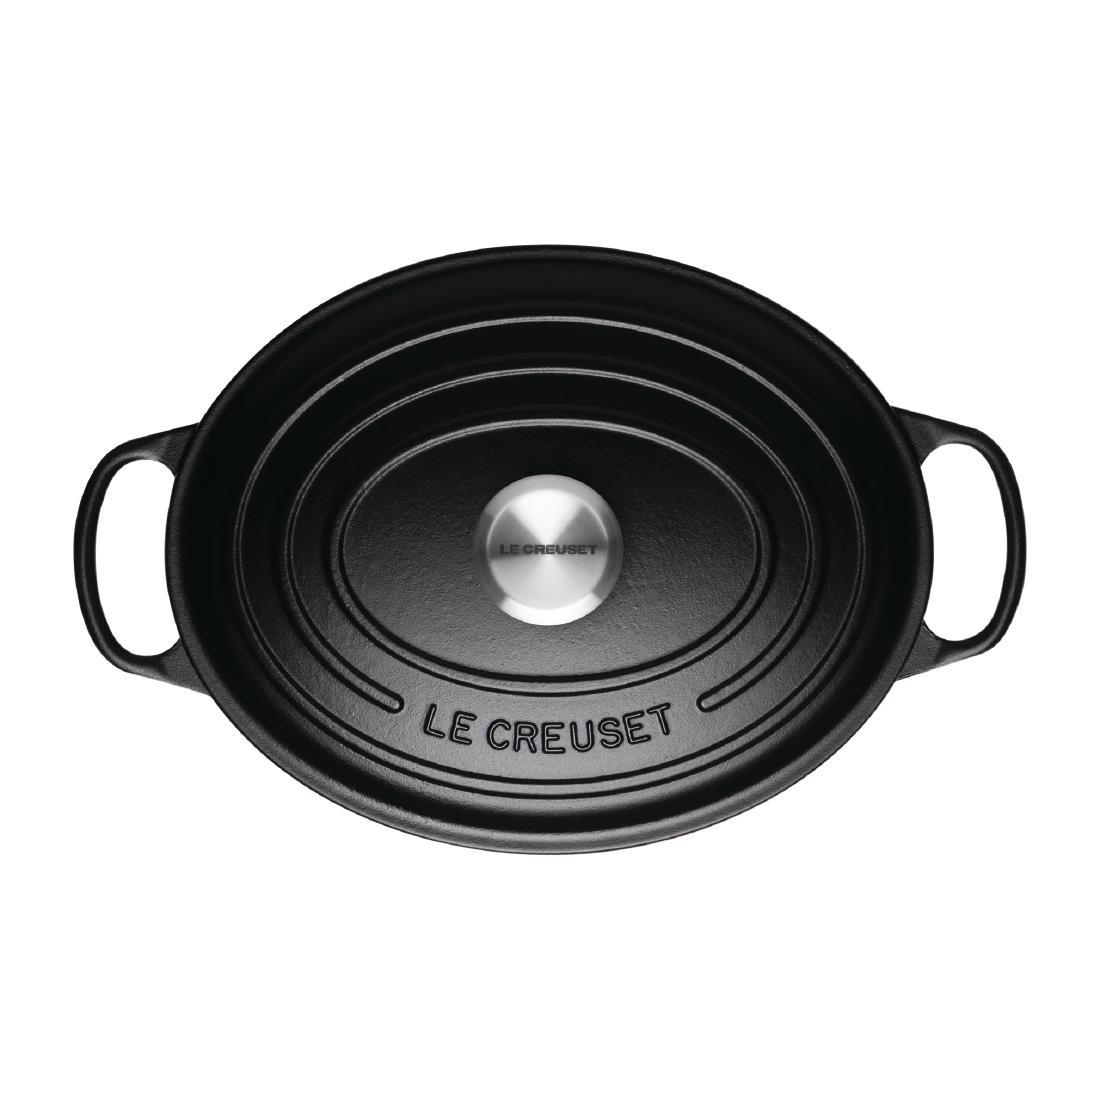 Le Creuset Cast Iron Oval Casserole 29cm 4.7L Satin Black - DR467  - 2